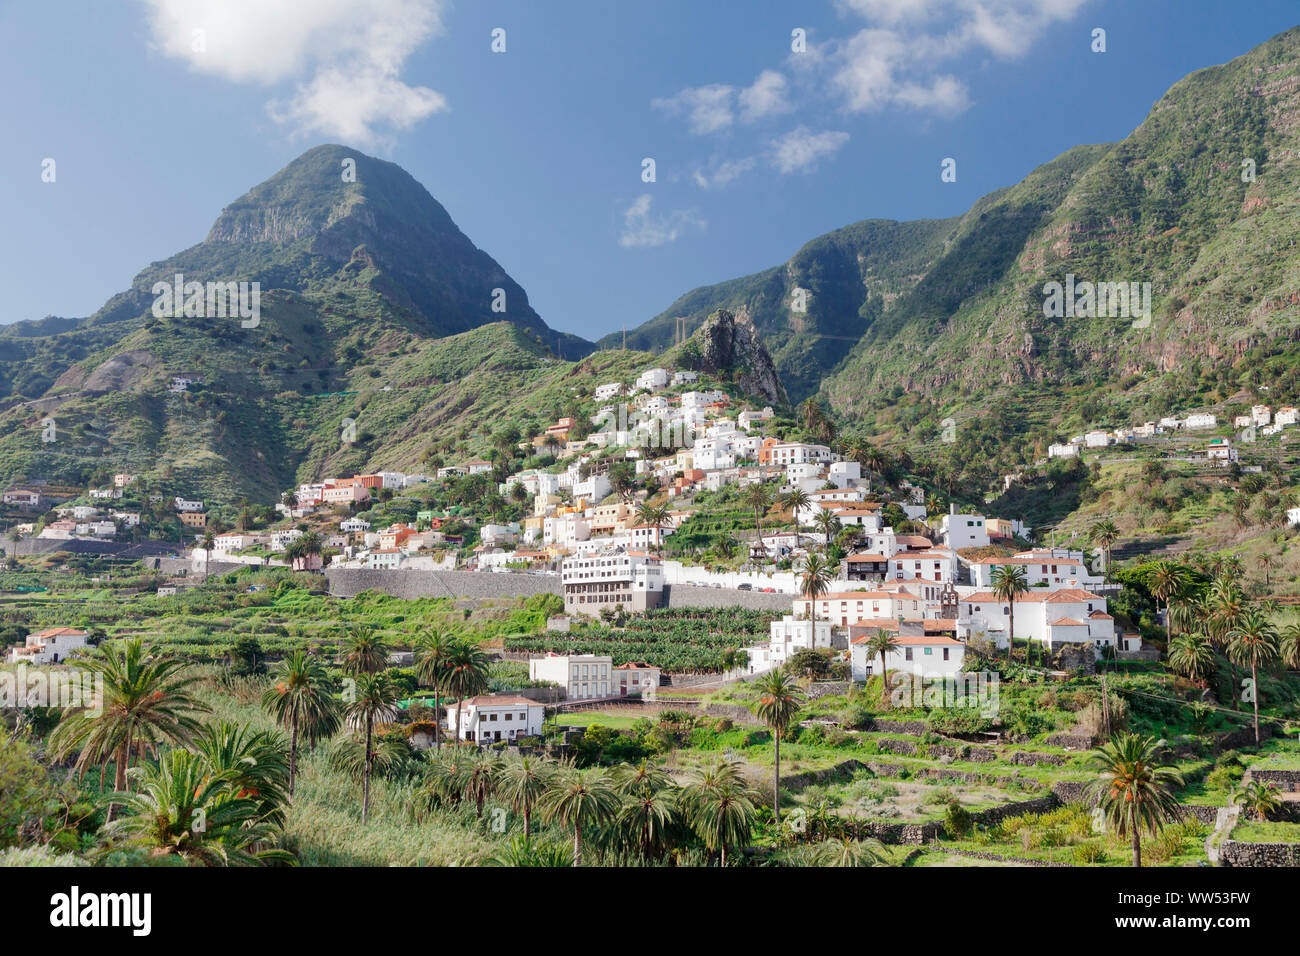 La guancha, twin rocks, Roques de San Pedro, les plantations de bananes, la Gomera, Canary Islands, Spain Banque D'Images